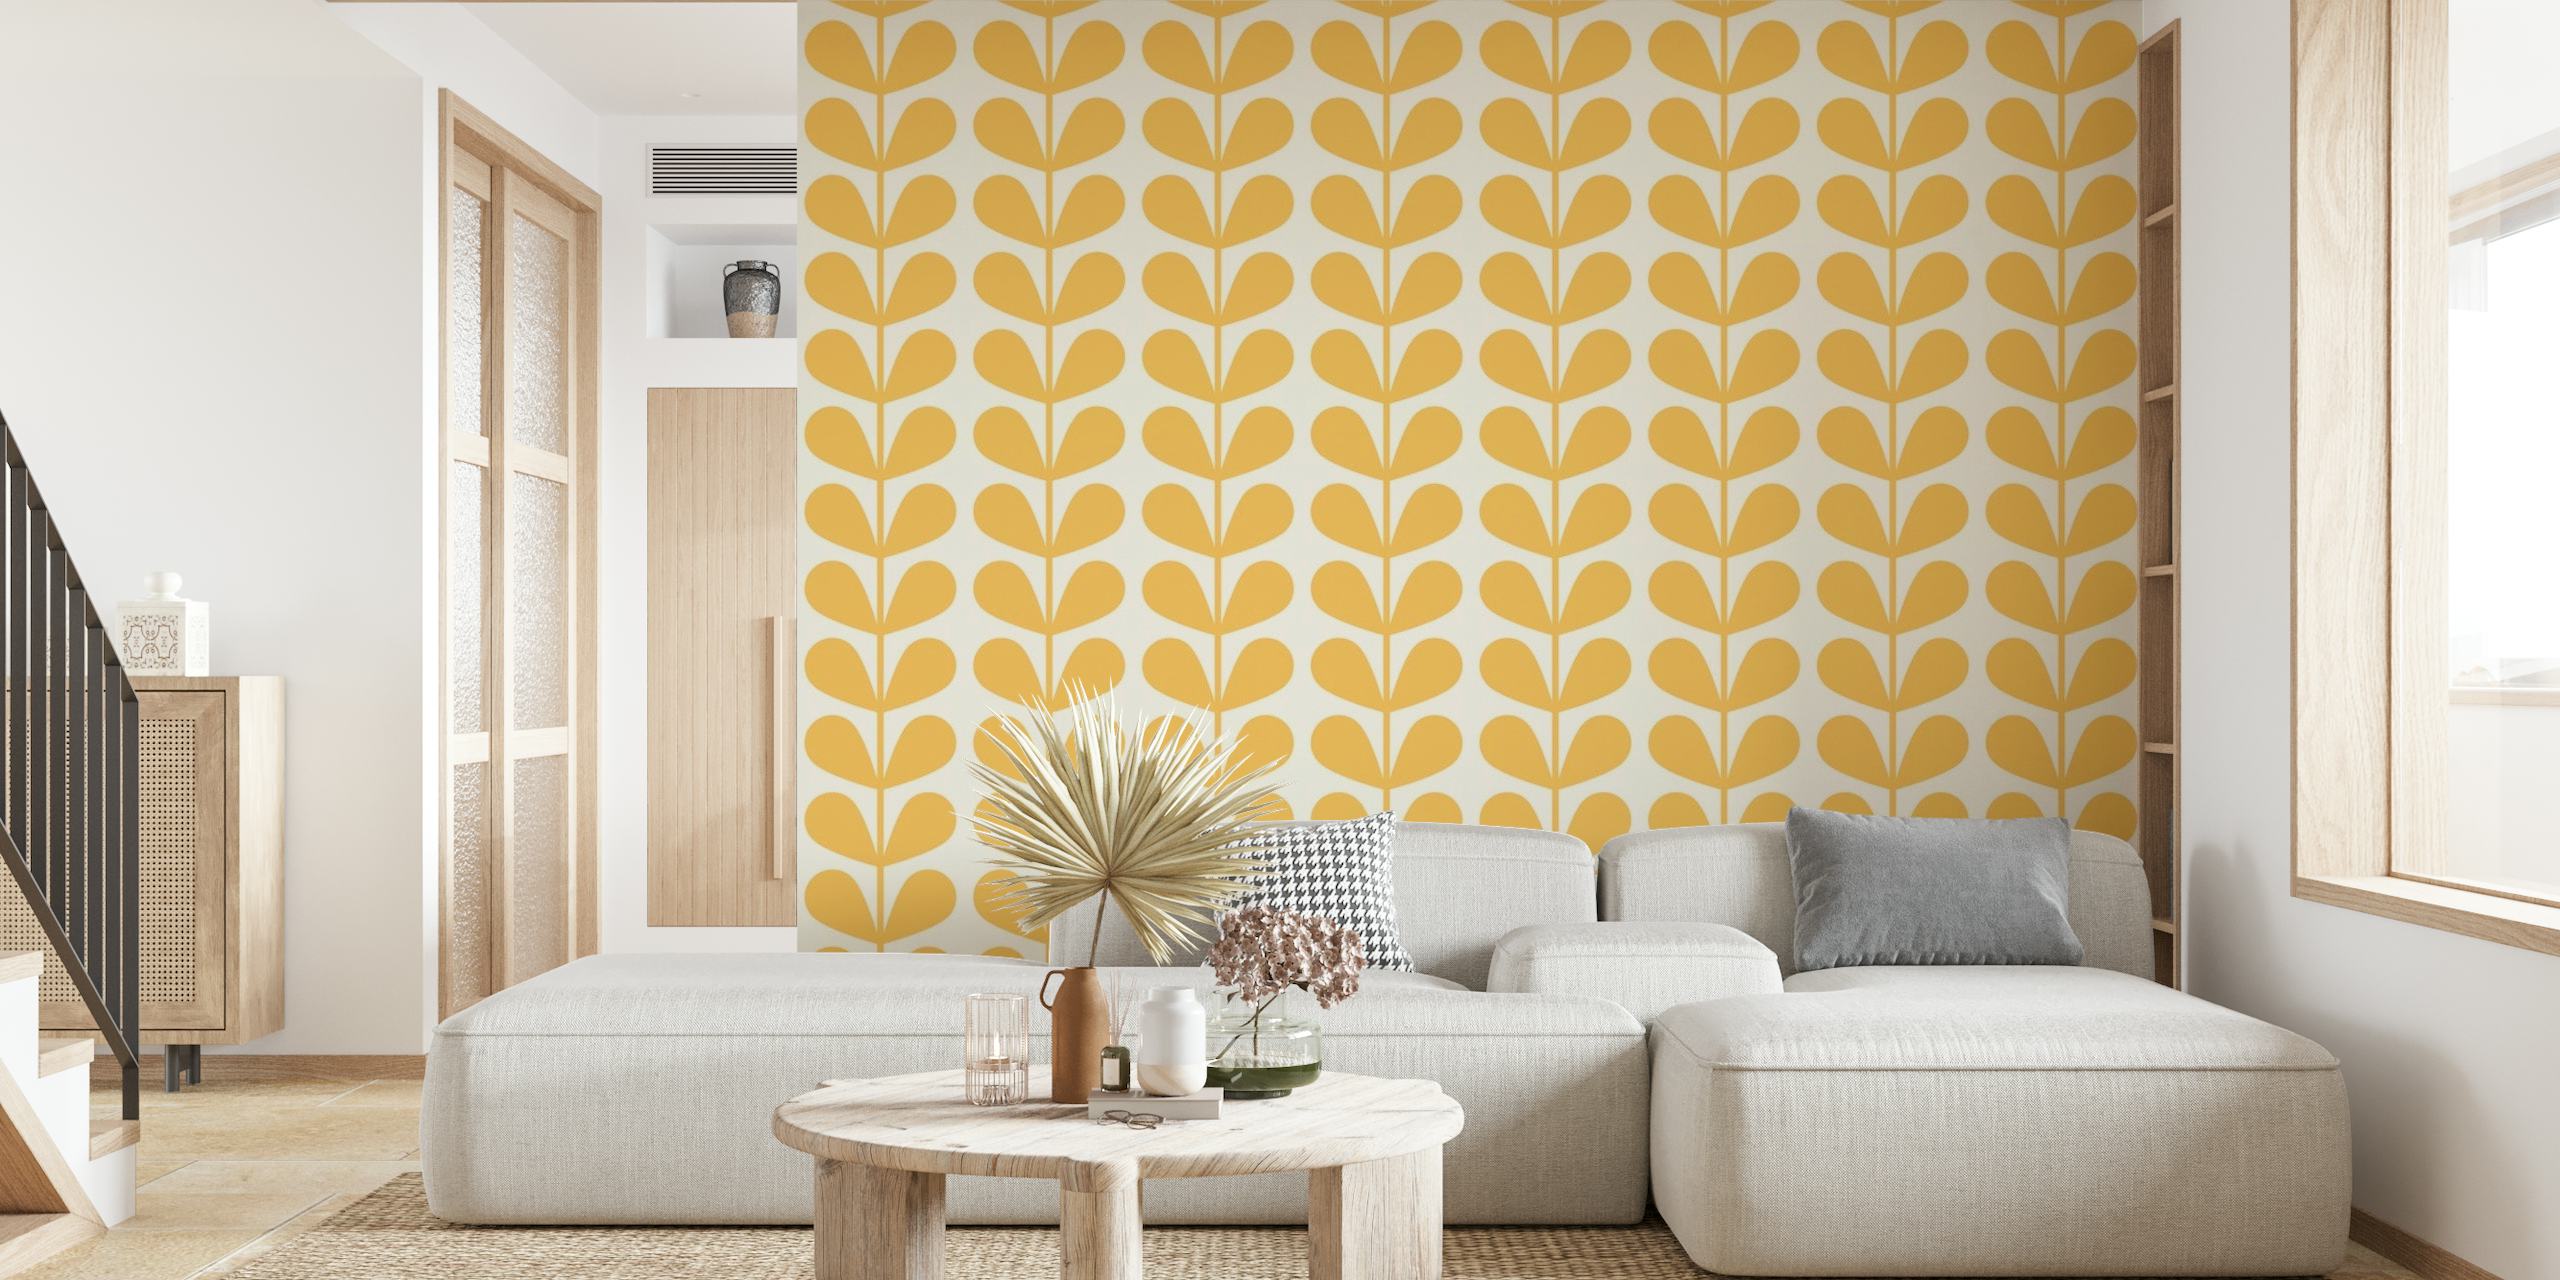 Fotomural vinílico de parede com padrão de folha estilo meados do século em tons amarelos e neutros